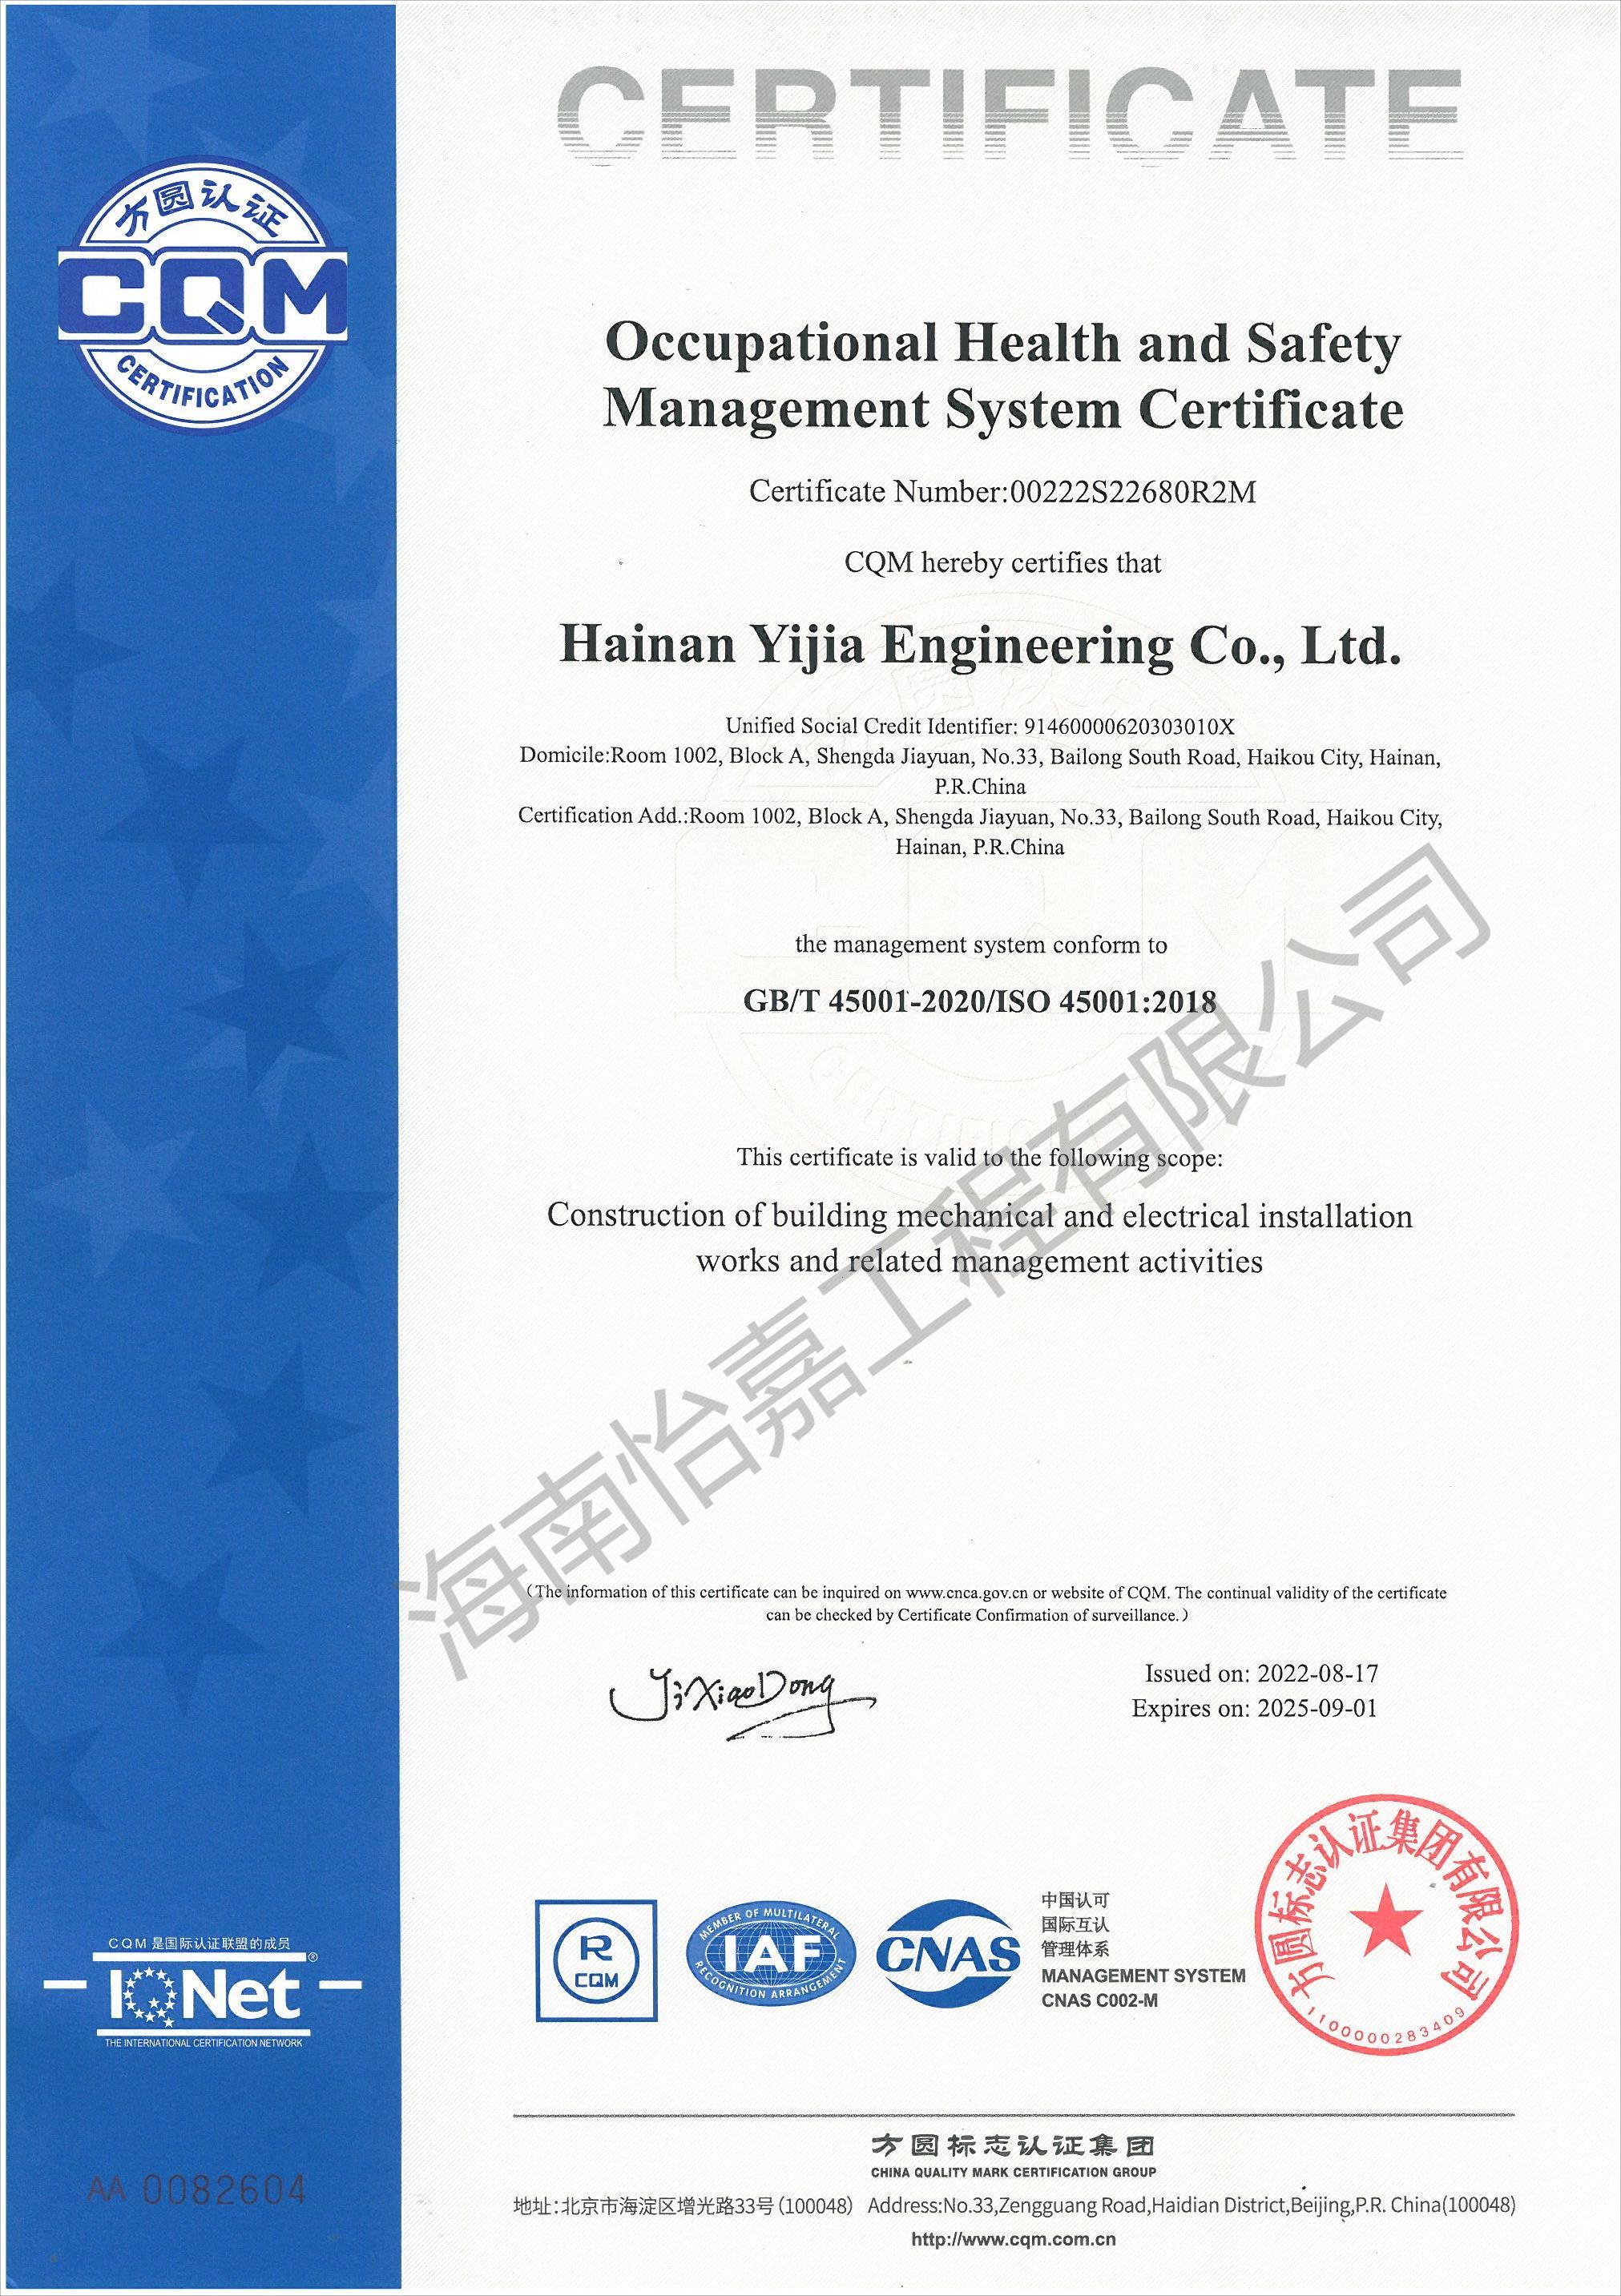 职业健康安全管理体系认证证书英文版_00(1).jpg